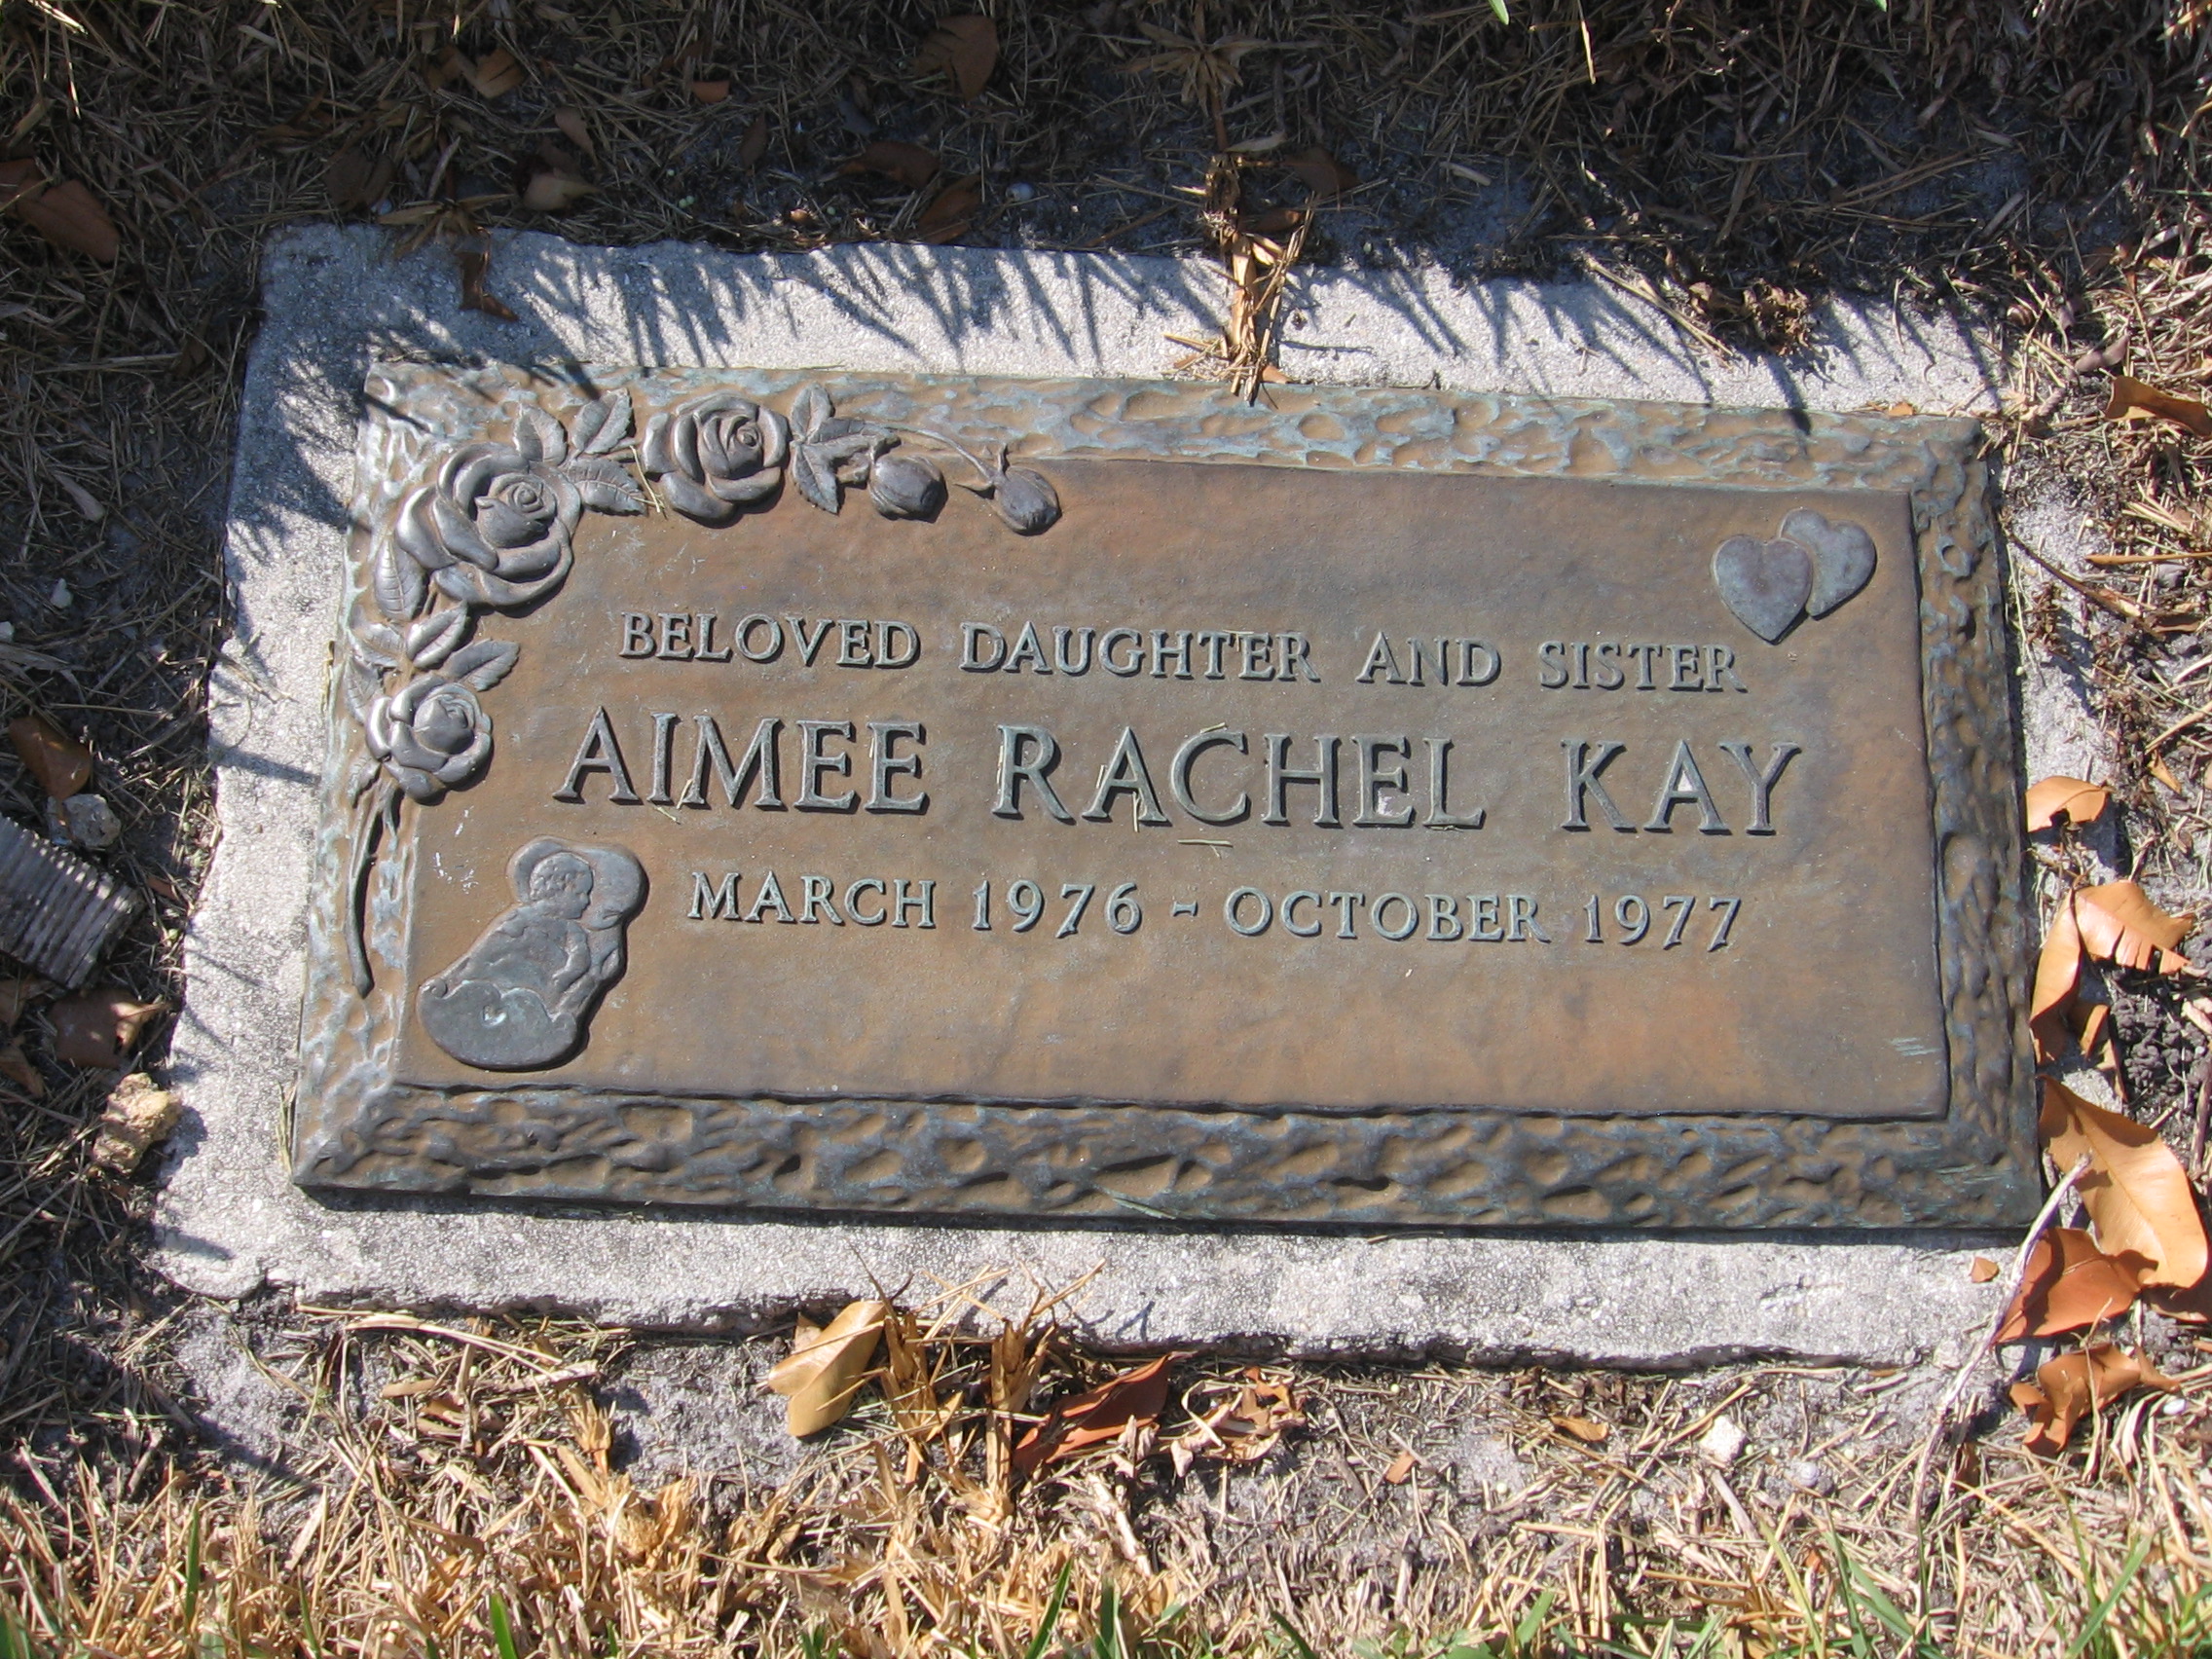 Aimee Rachel Kay